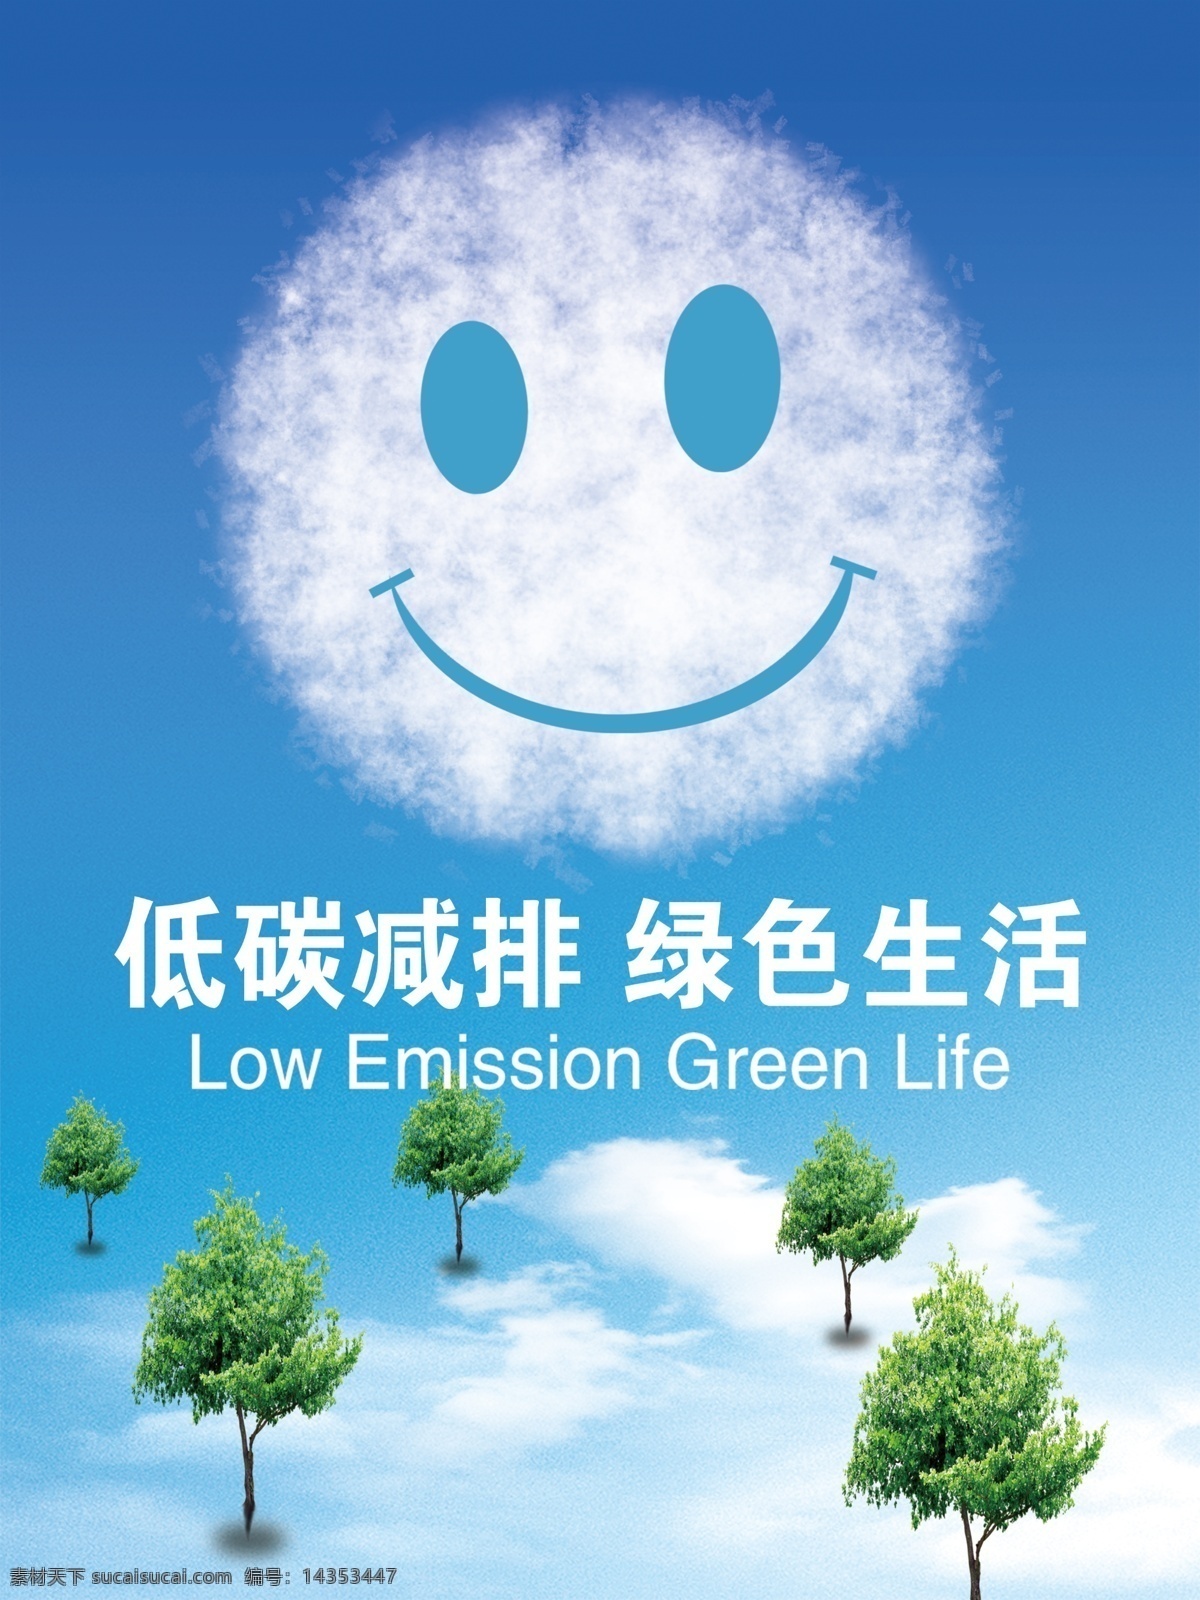 低碳减排 低碳 减排 绿色生活 笑脸 绿色 公益广告 蓝天白云 社区文化 环保